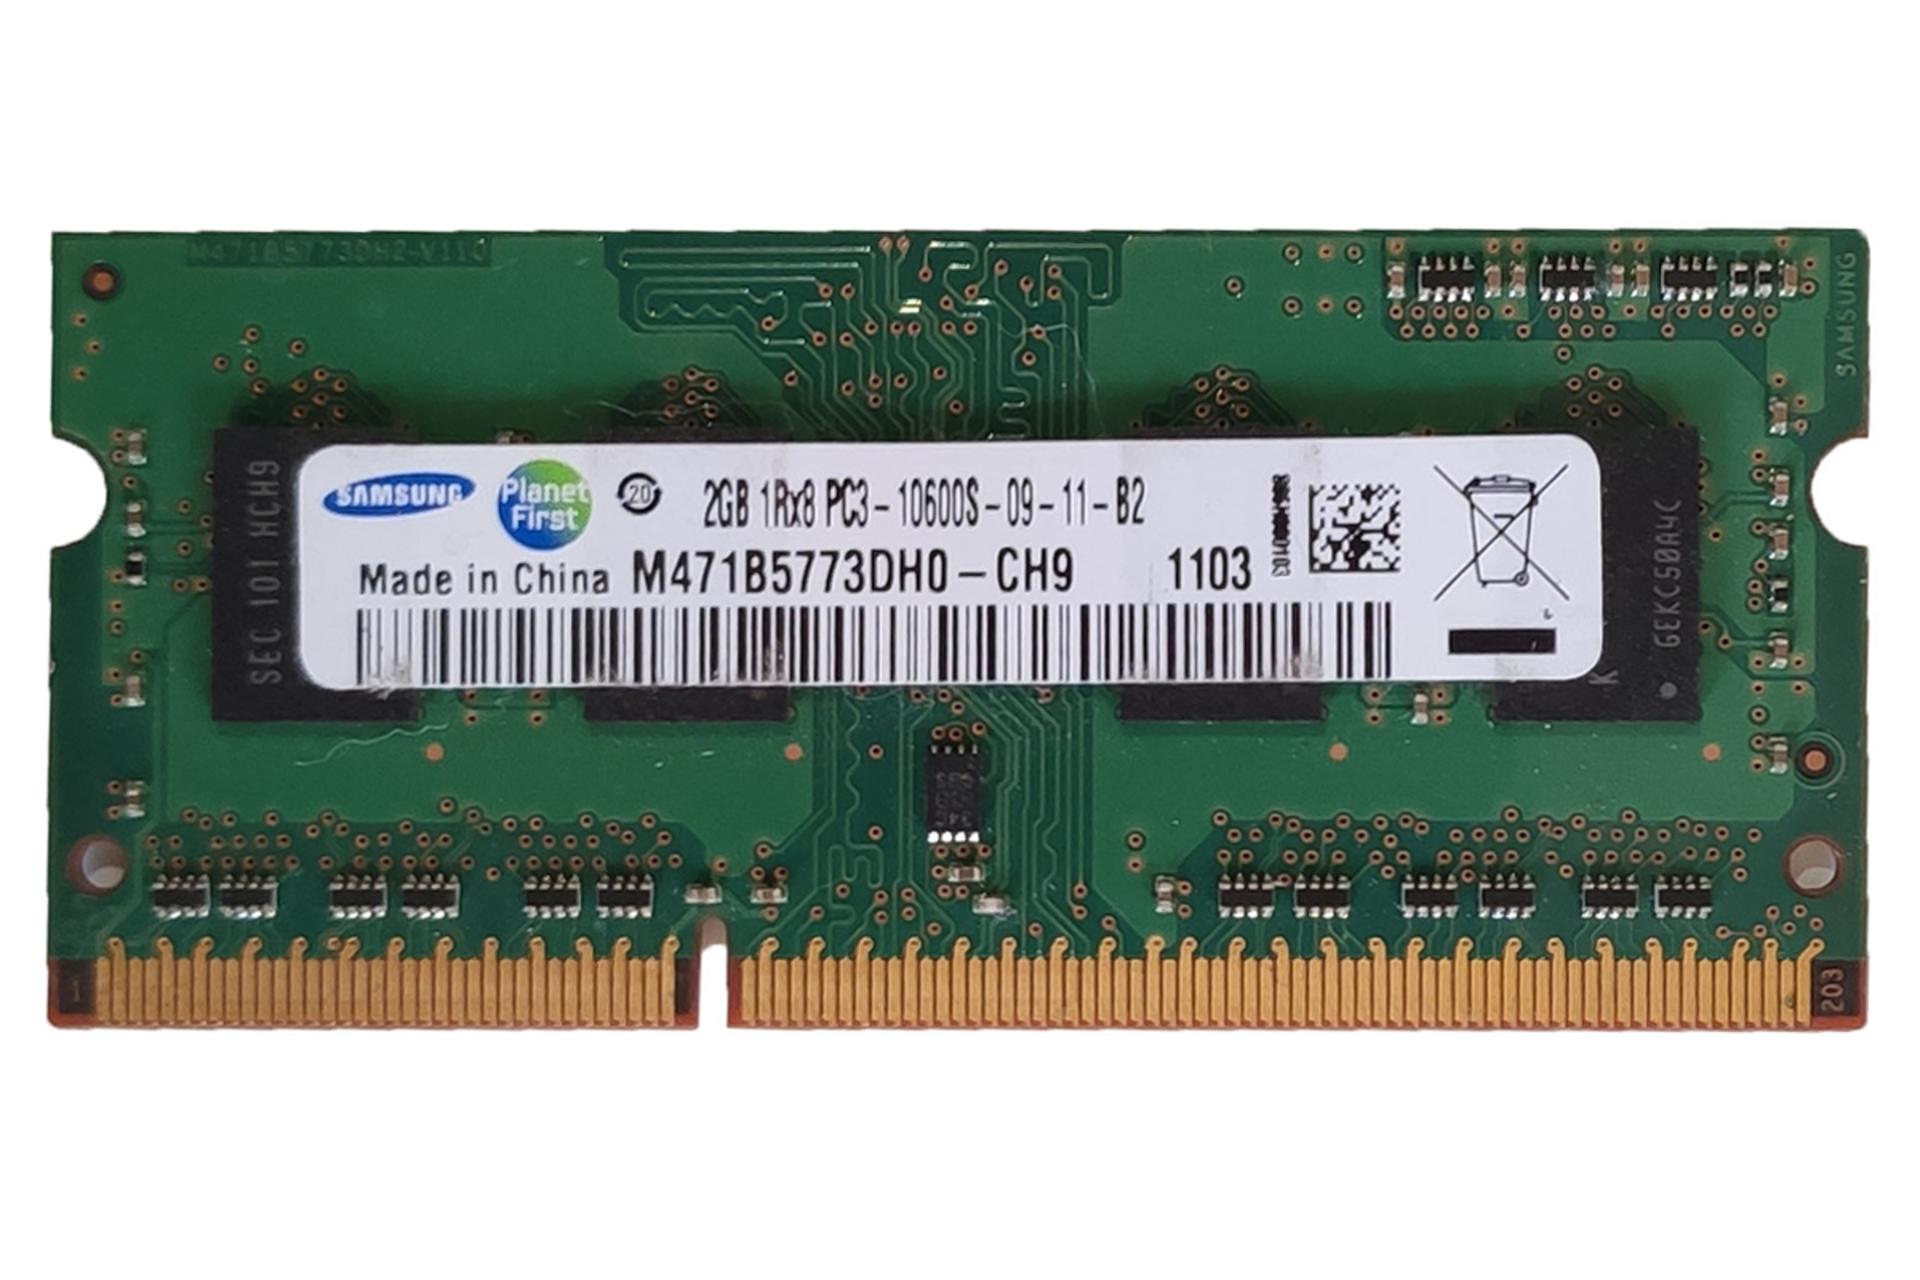 رم سامسونگ M471B5773DH0-CH9  ظرفیت 2 گیگابایت از نوع DDR3-1333